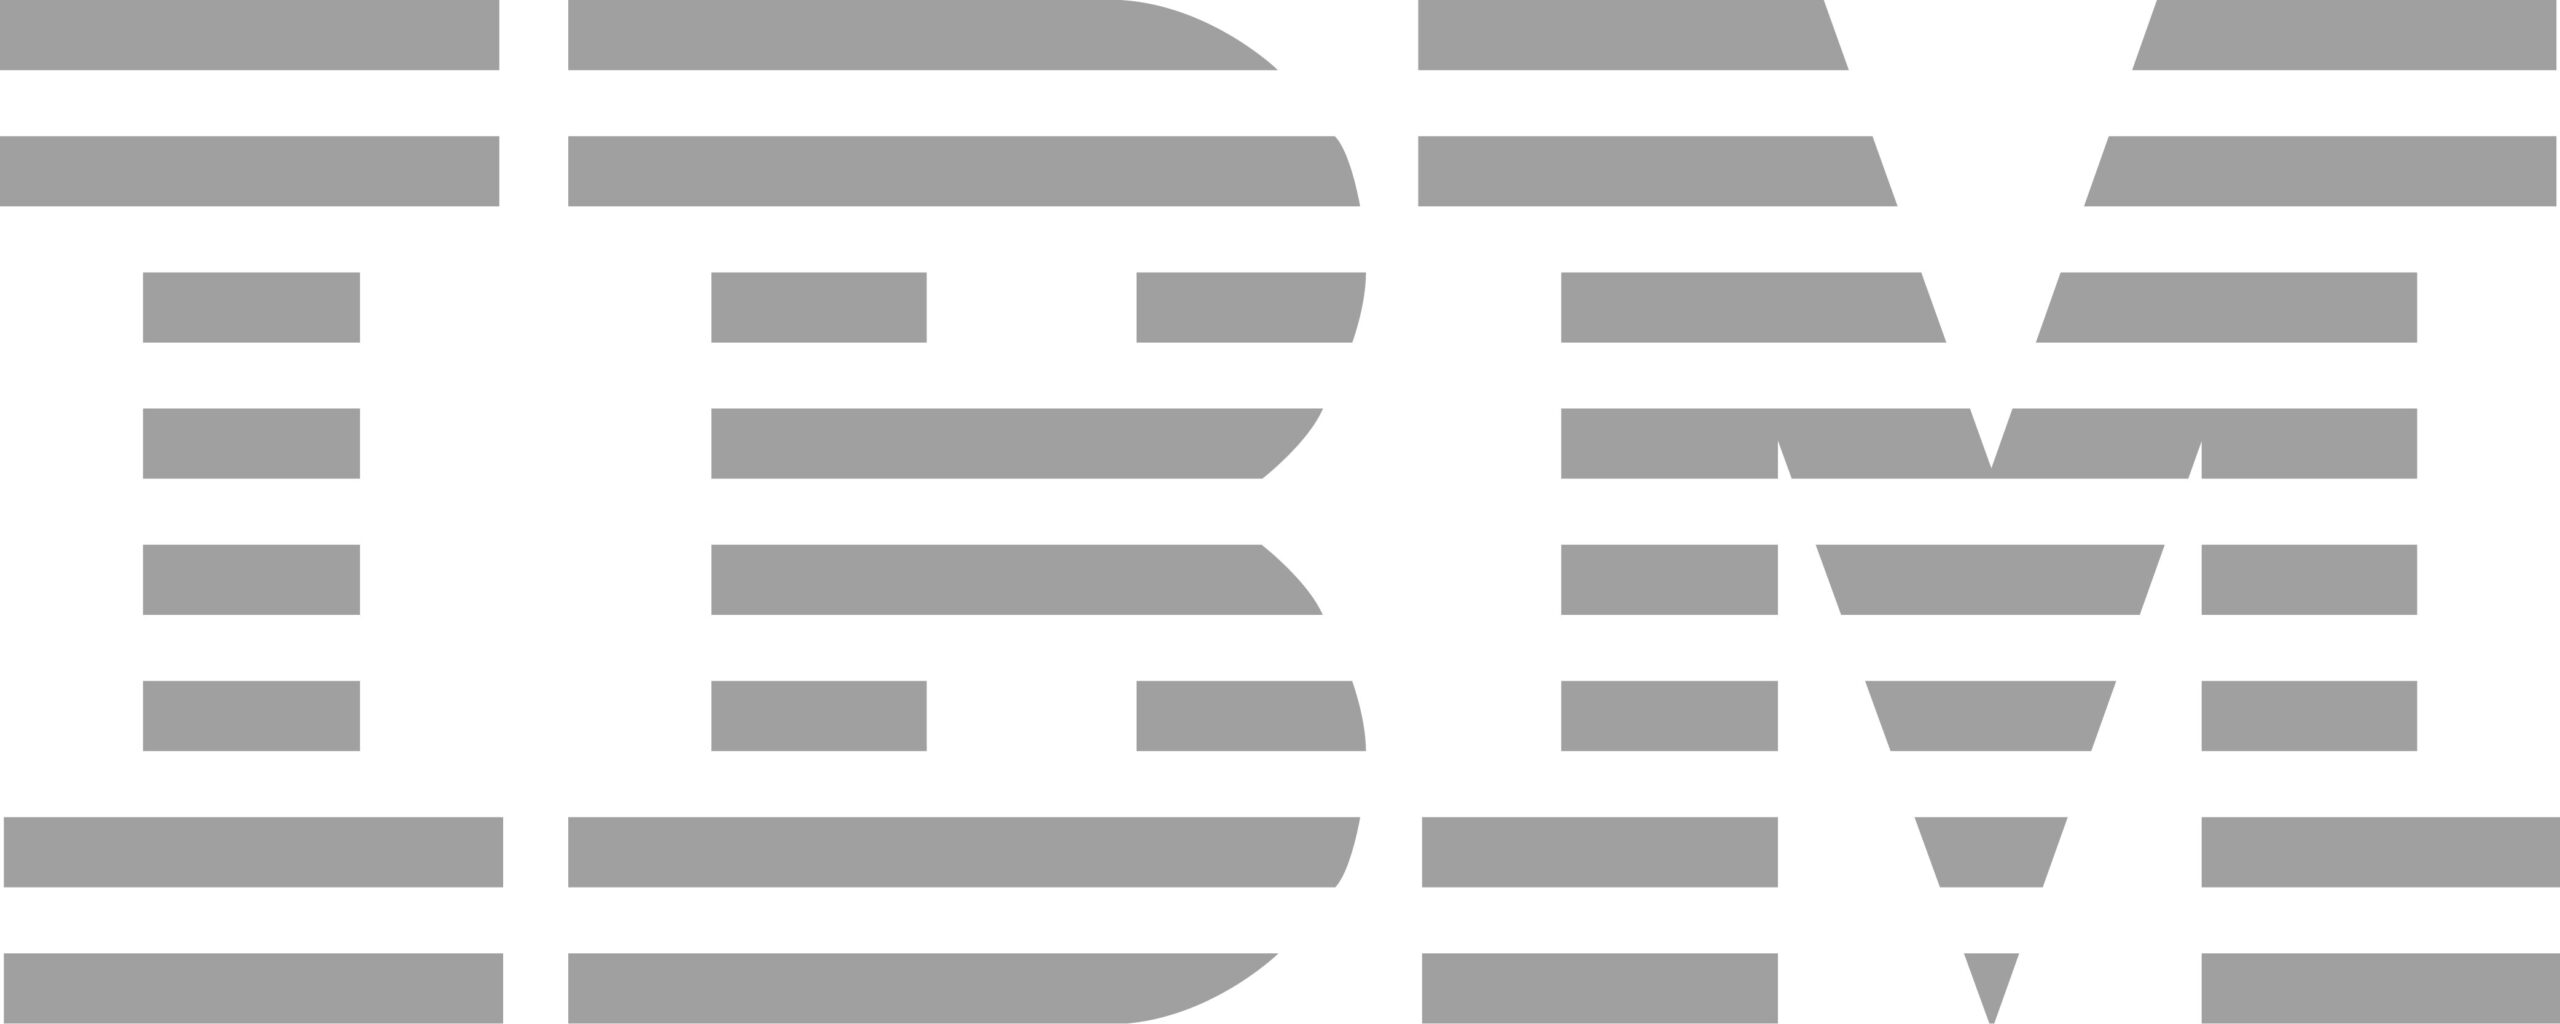 ibm logo gray